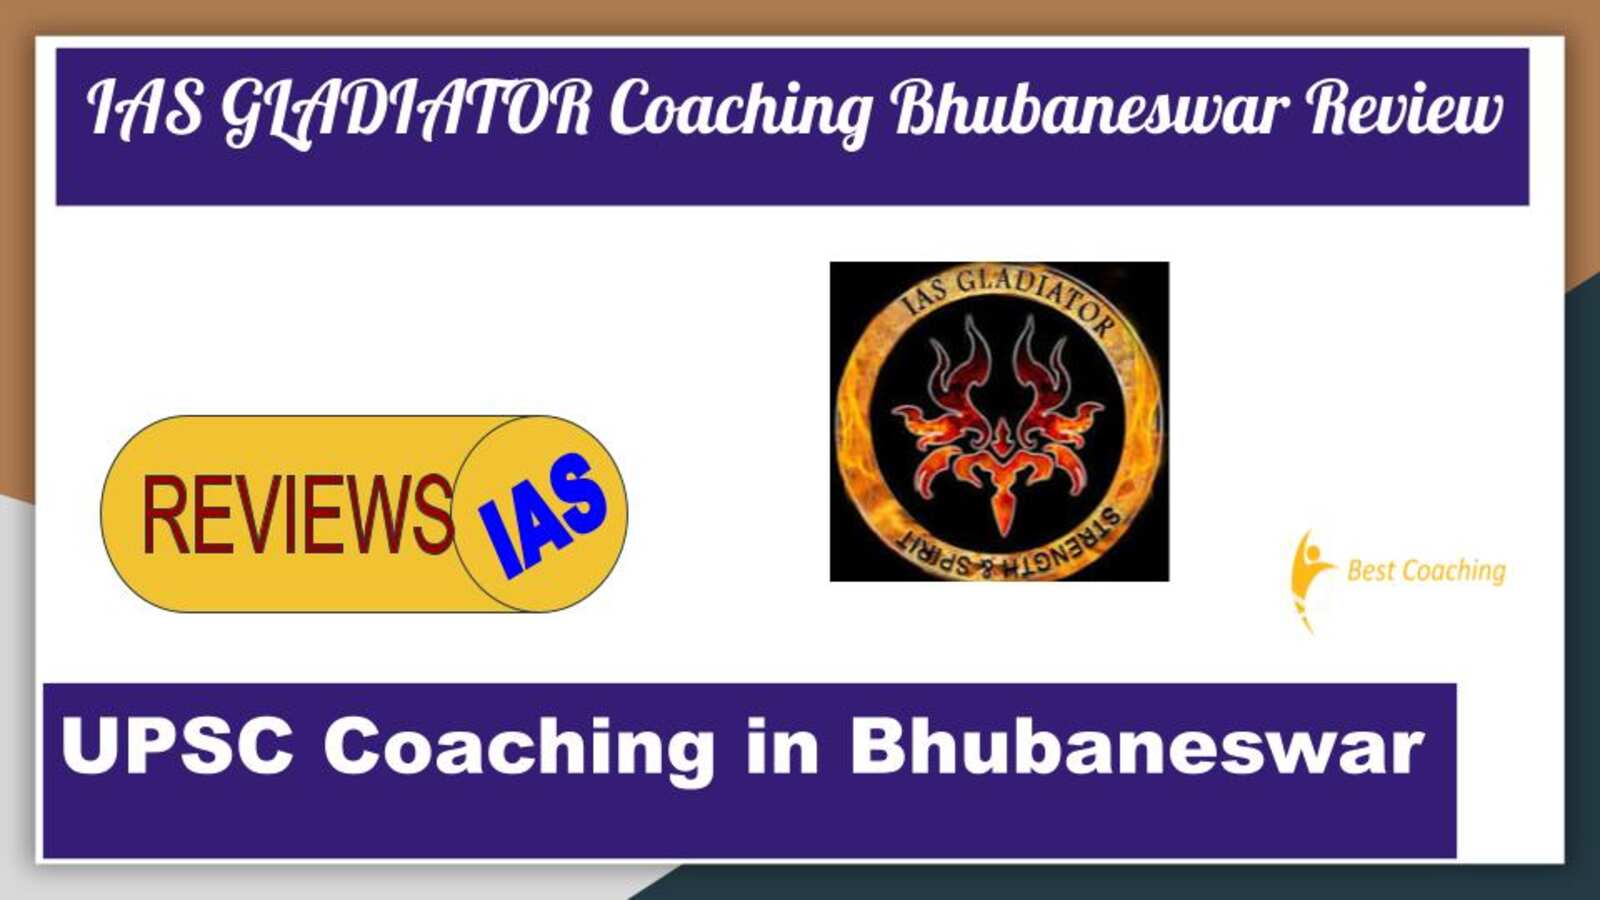 IAS GLADIATOR Coaching in Bhubaneswar